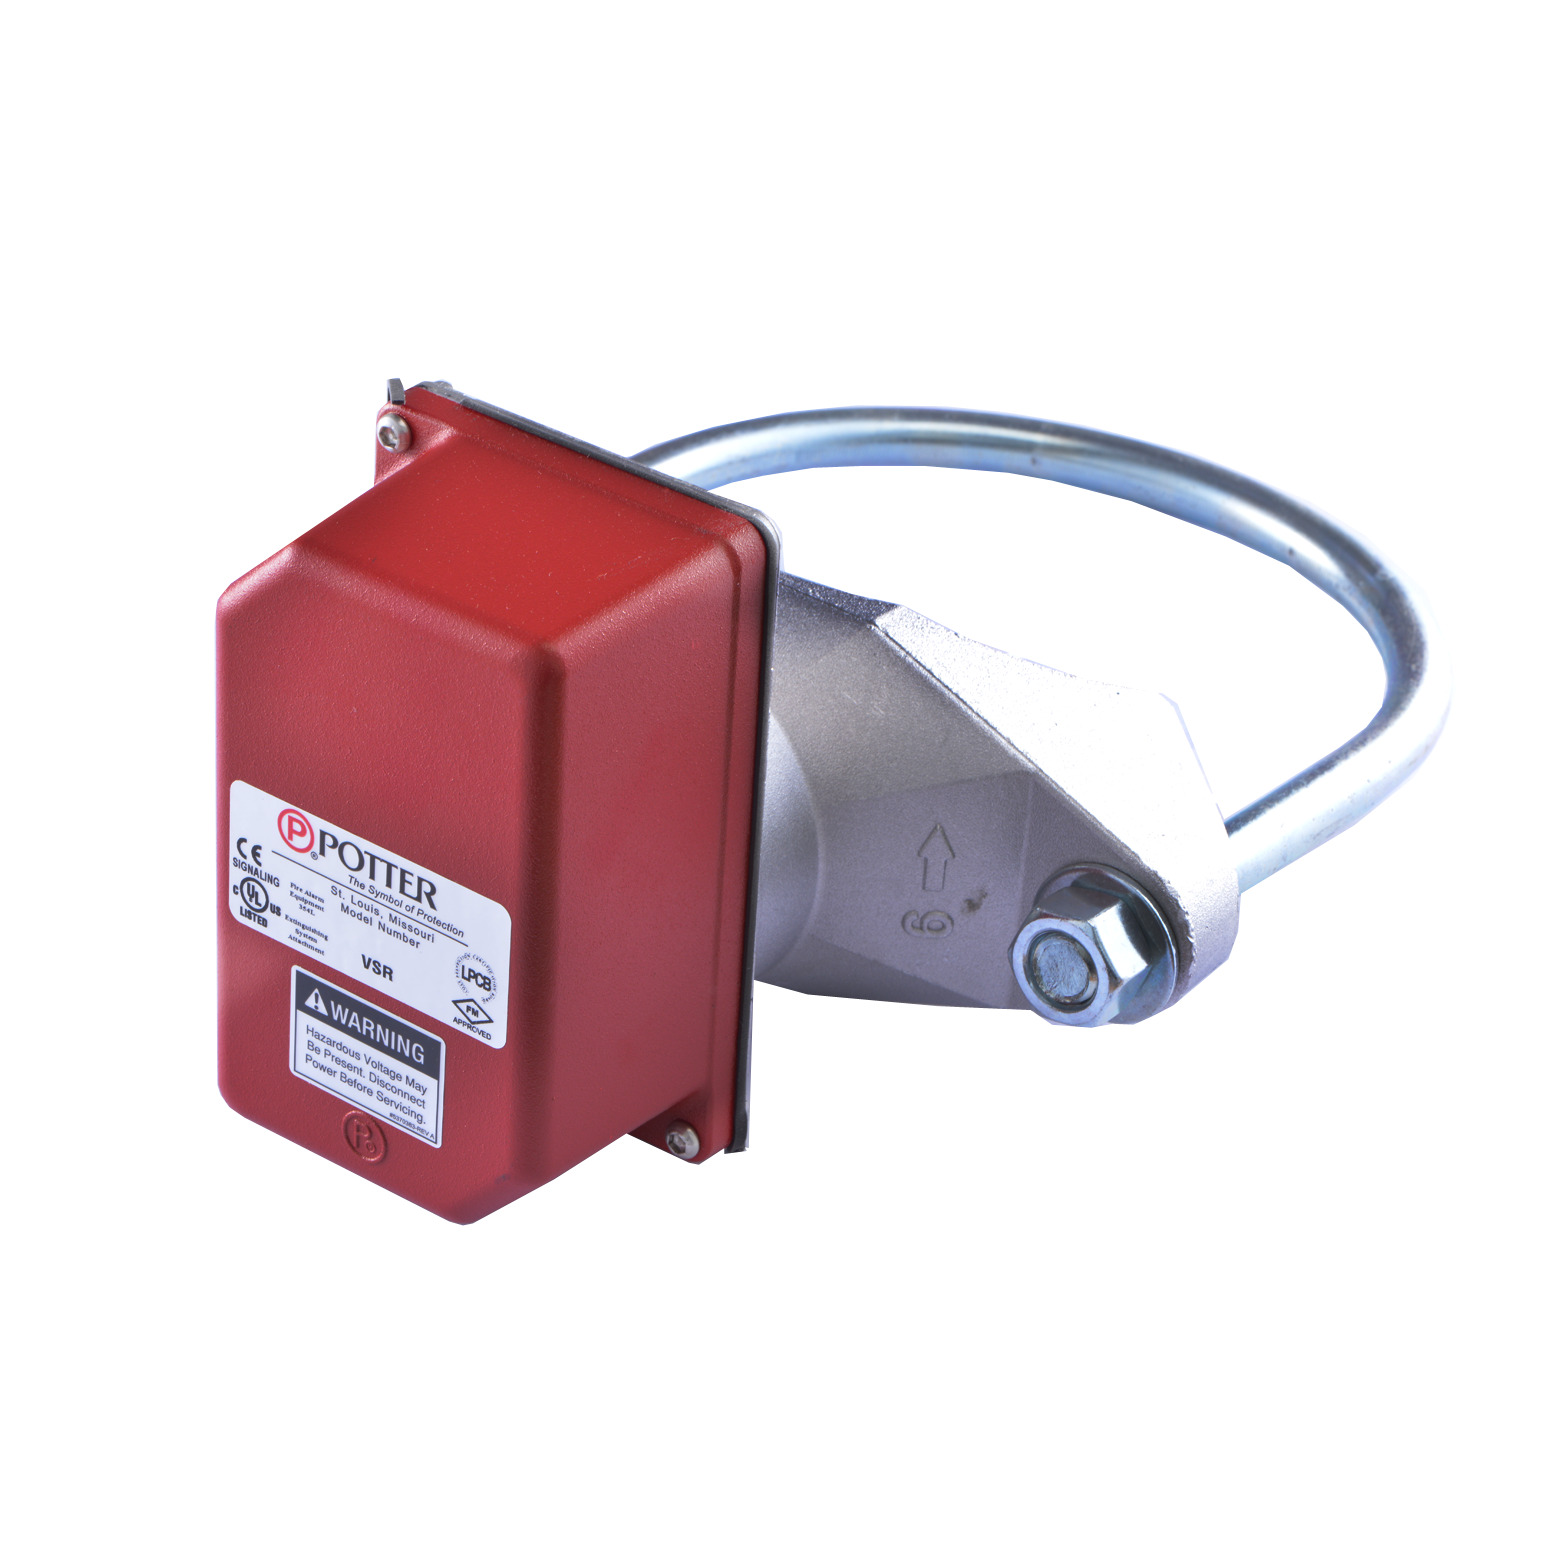 Potter Electric Signal Water flow Alarm Switch wet sprinkler system 8" VSR-8 